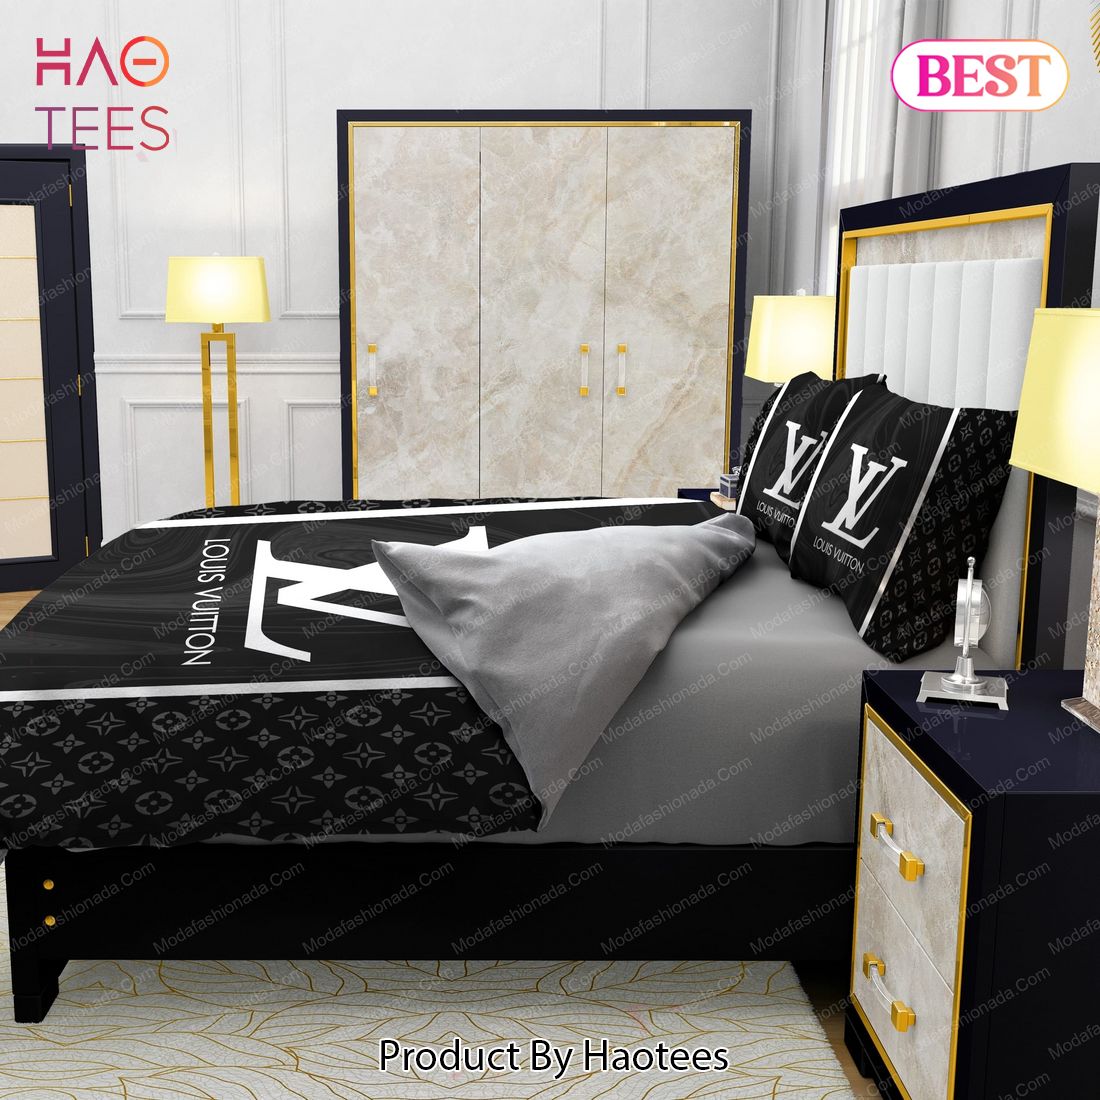 Black Veinstone Bedroom Duvet Cover Louis Vuitton Bedding Set - Binteez